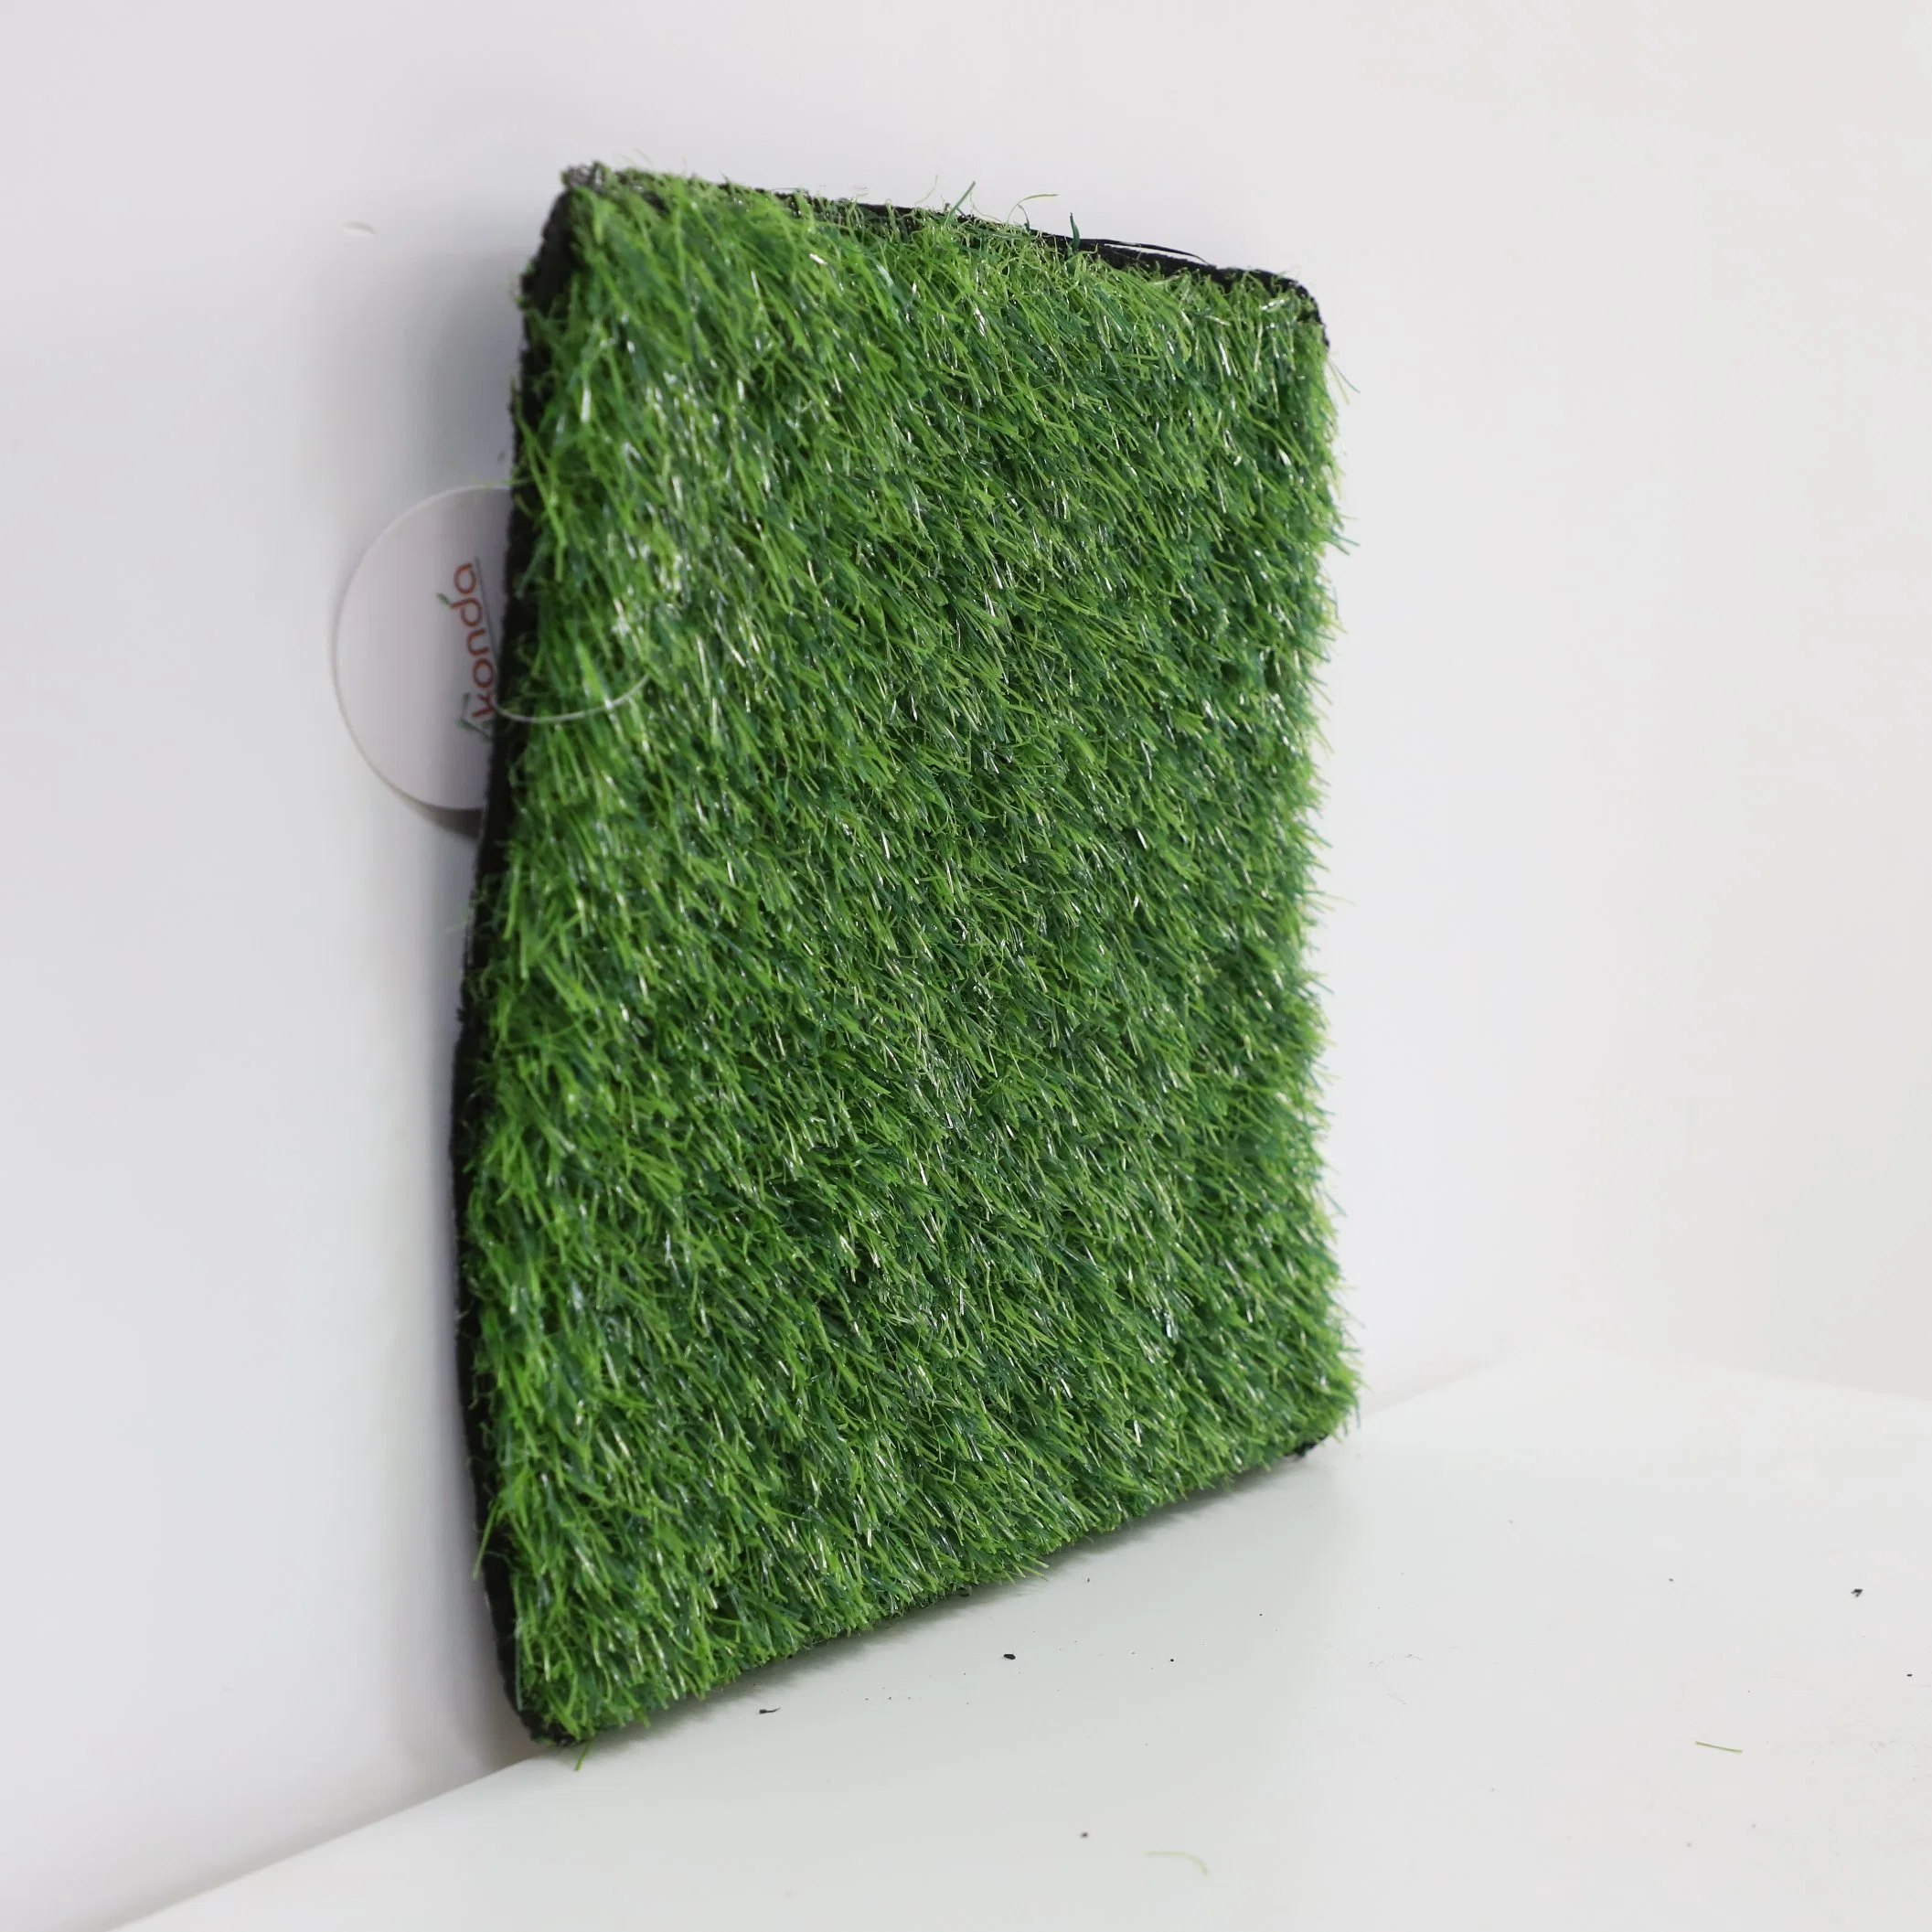 Wholesale/Supplier Synthetic Grass Footbal Artificial Grass Turf Grass Synthetic Fake Grass Mat Carpet for Garden